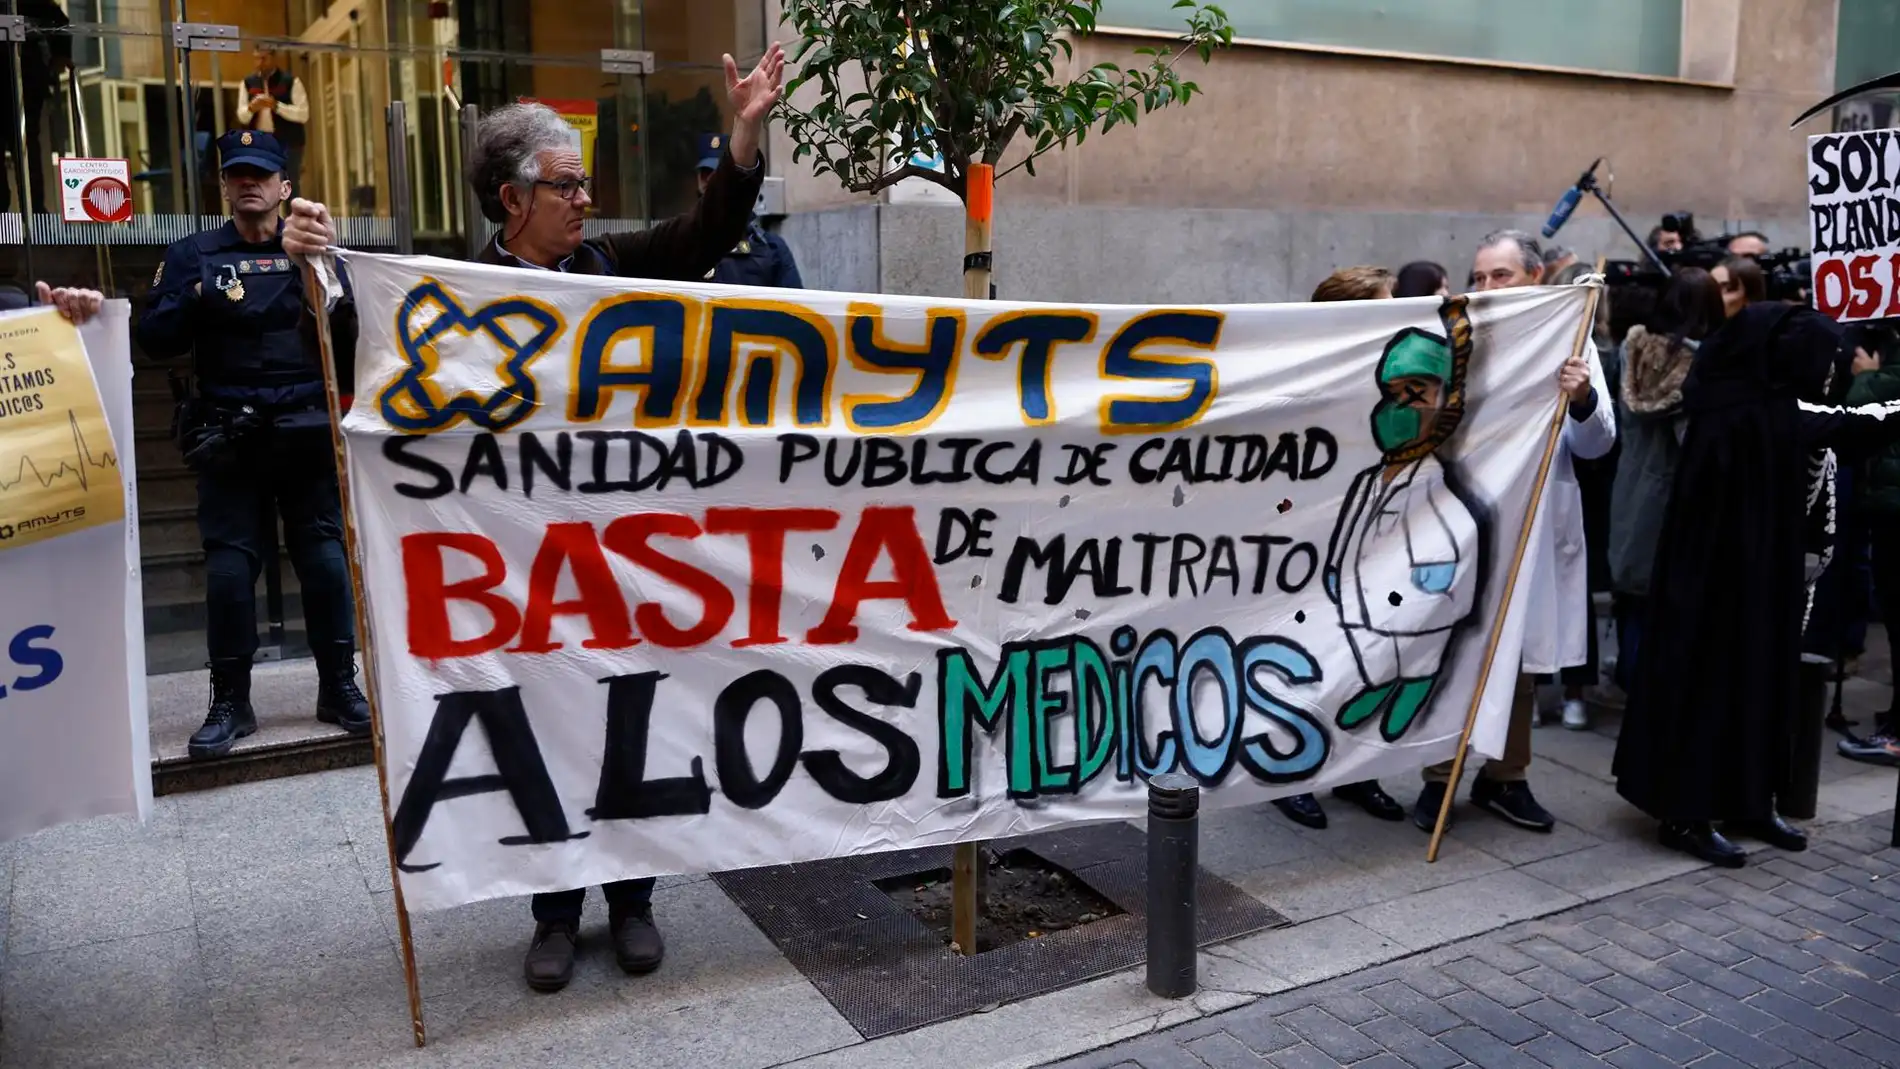 Manifestación de sanitarios en Madrid hoy: calles cortadas al tráfico Onda Cero Radio